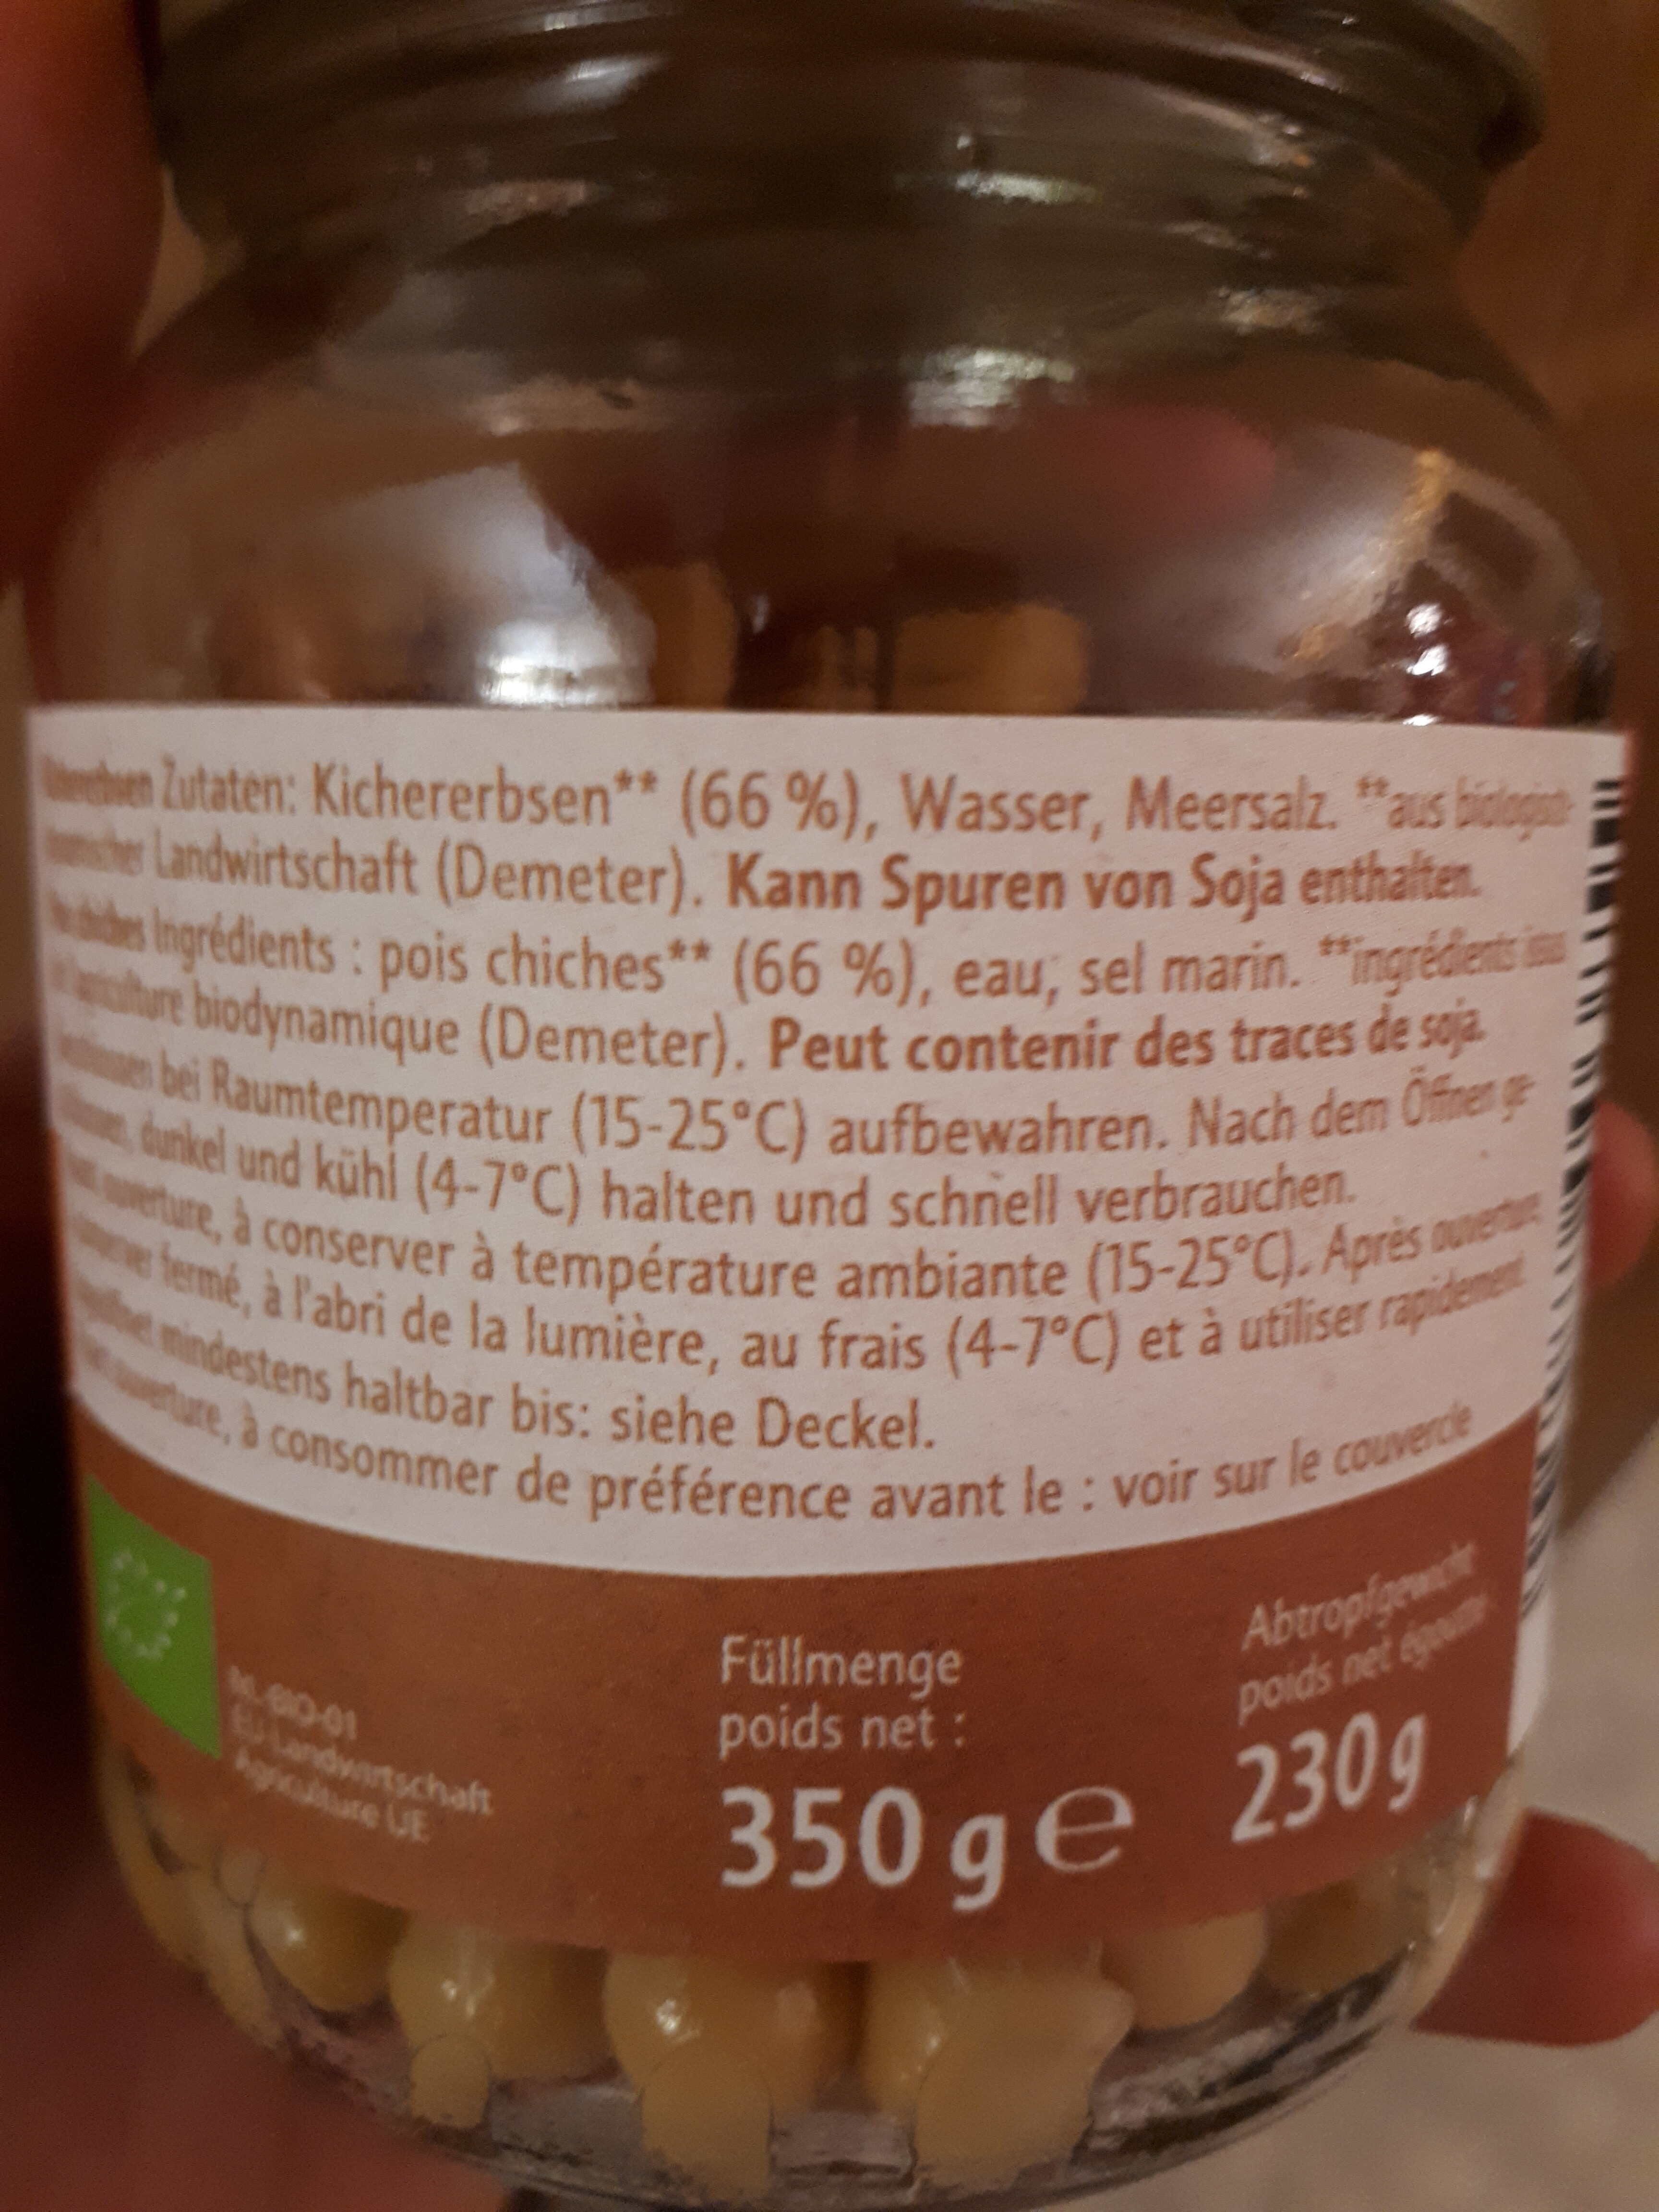 Kichererbsen - Ingredients